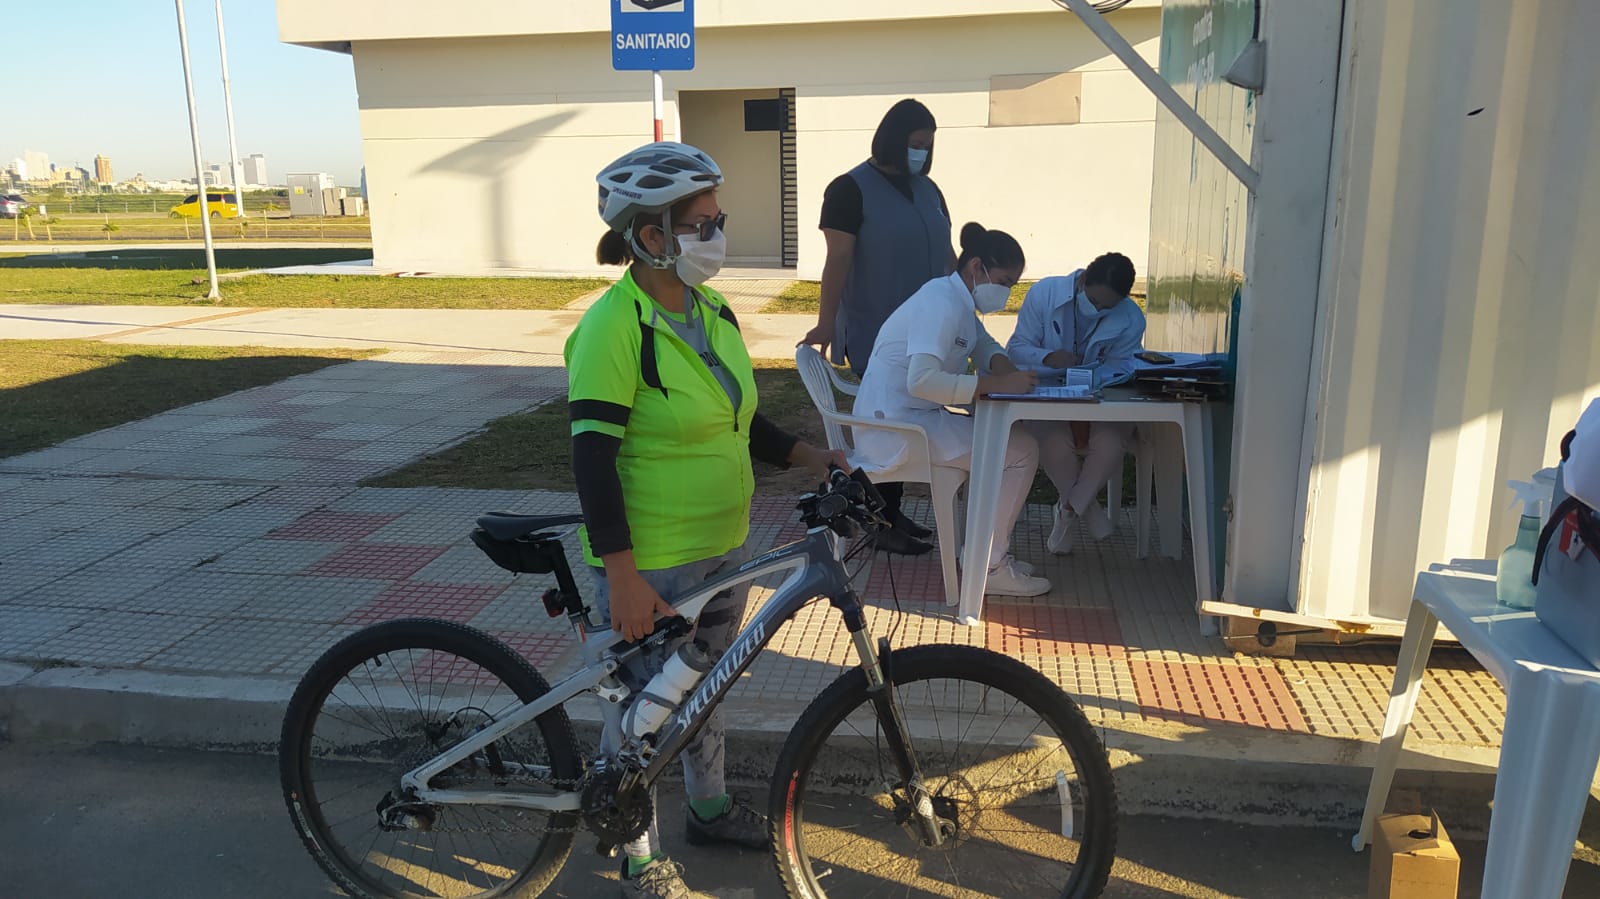 Edelma Medina Vda. de Centurión acudió hasta el puesto de vacunación en su bicicleta. Foto: gentileza.